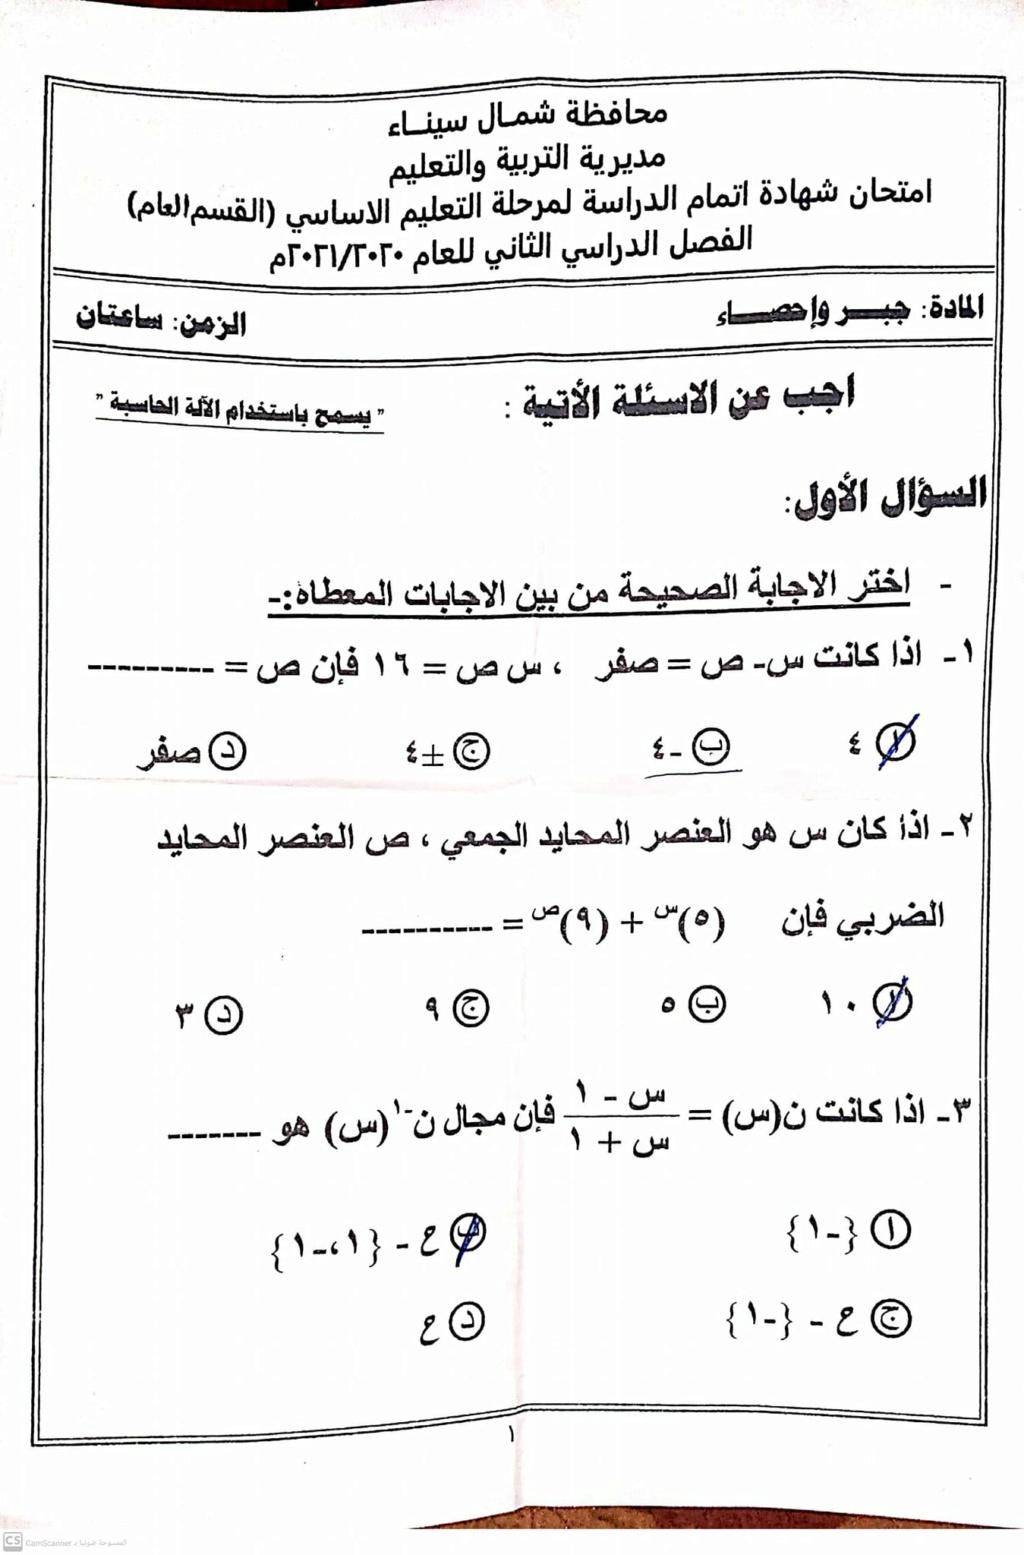  امتحان الجبر للشهادة الإعدادية ترم ثاني ٢٠٢١ محافظة شمال سيناء 13711